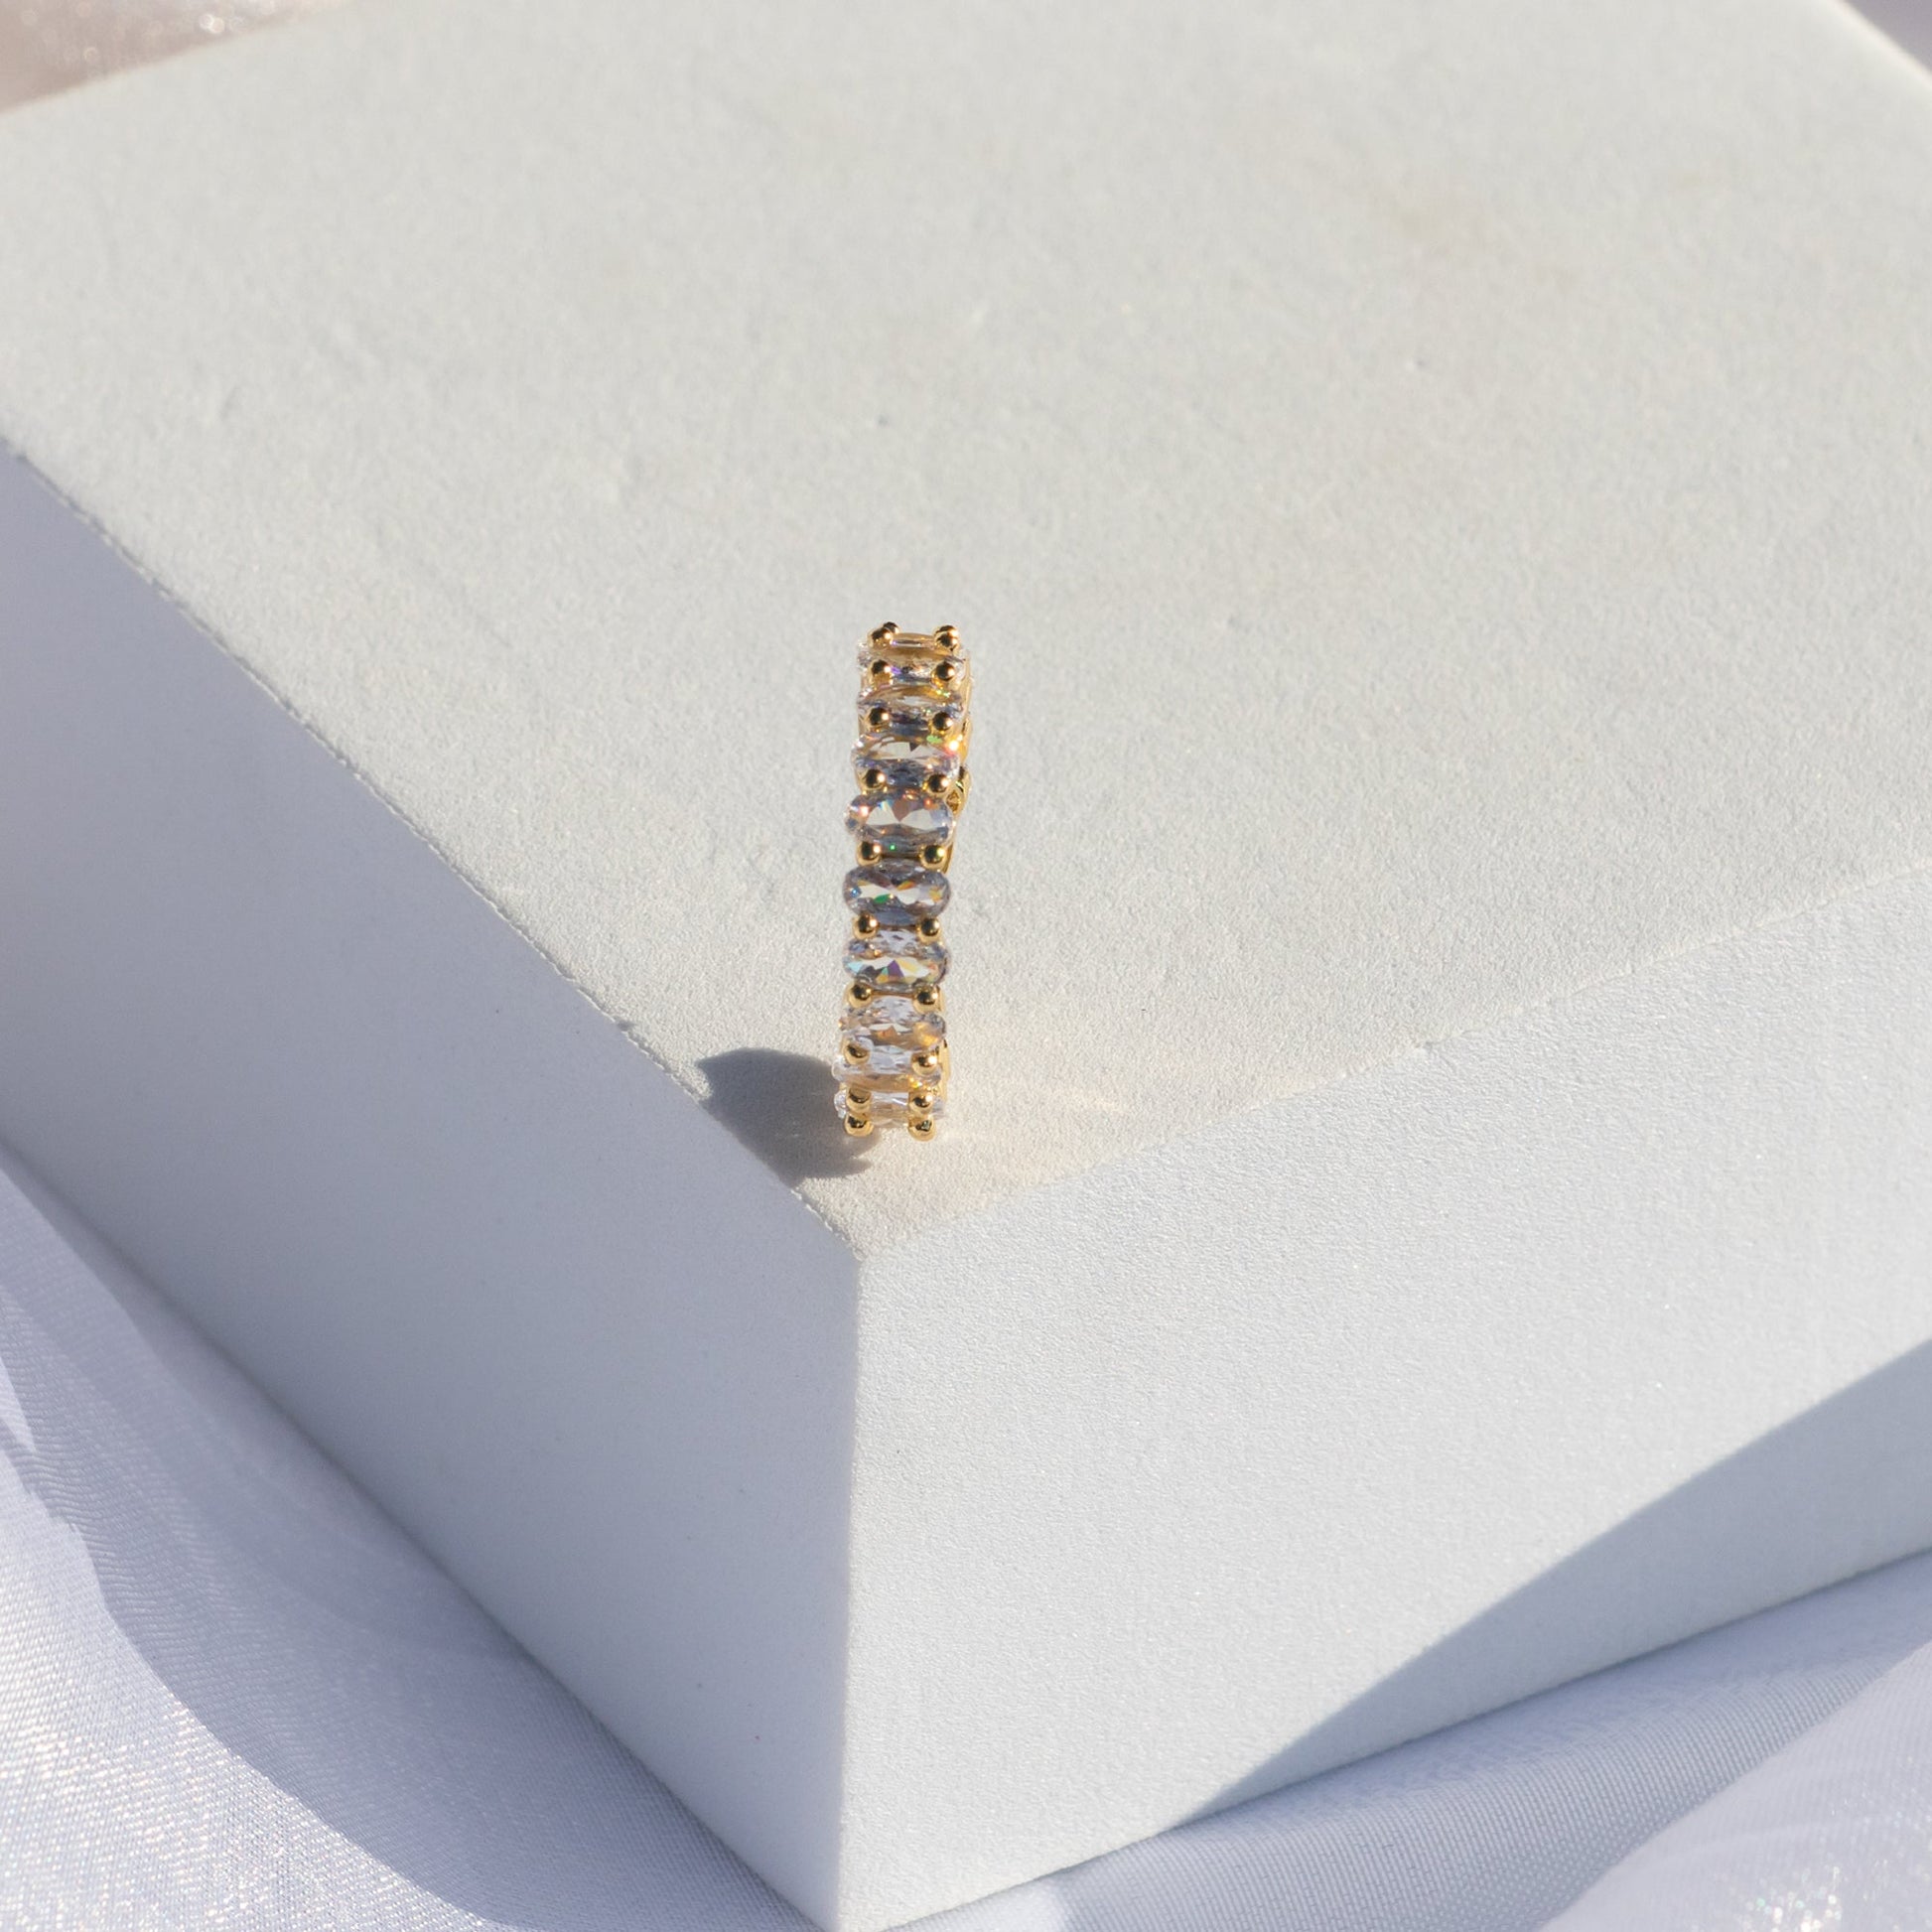 18k vergoldeter Ring Rana Verstellbar - NONOSH